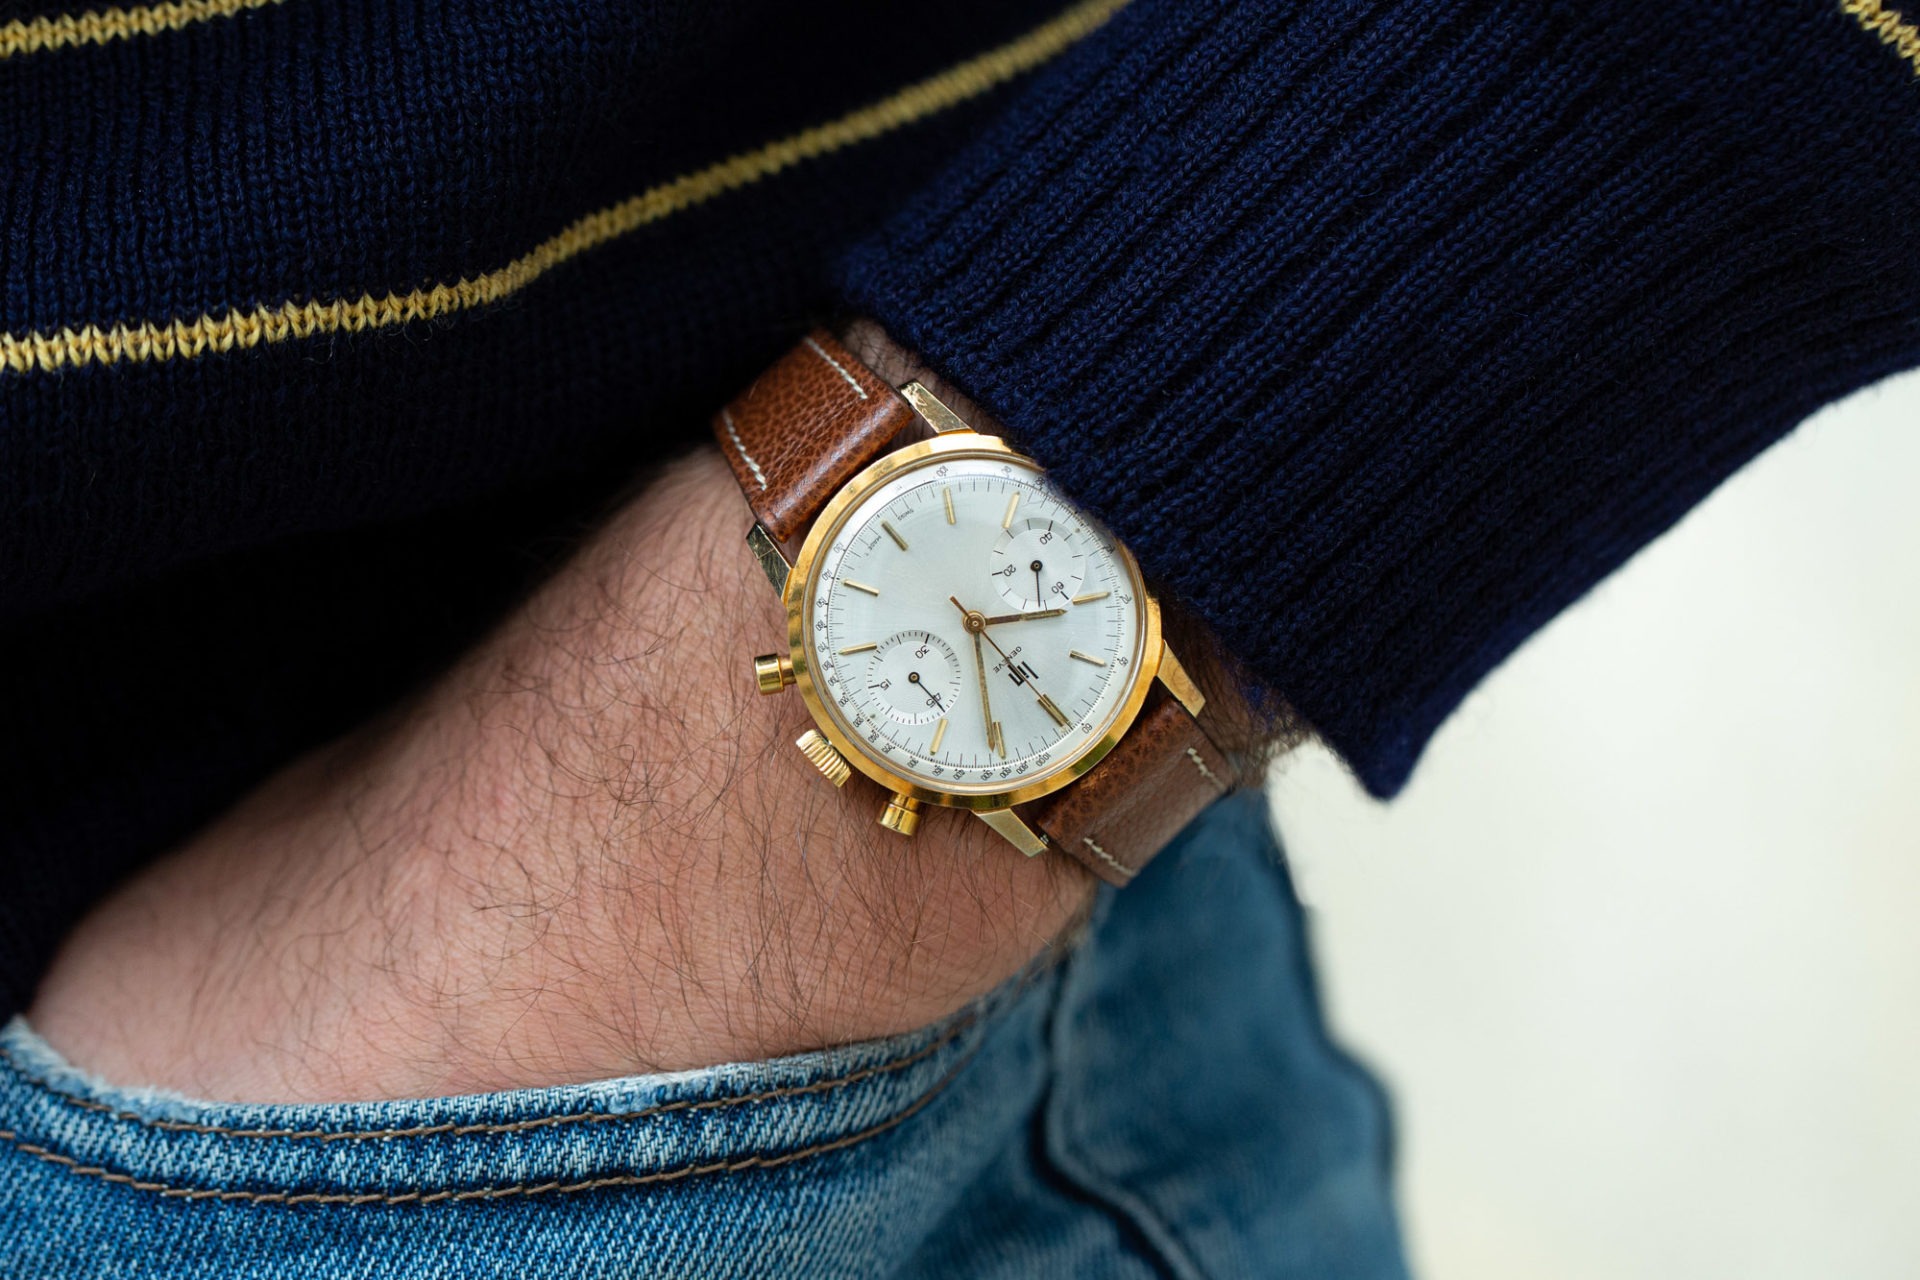 LIP Genève chronographe or - Sélection de montres vintage chez Joseph Bonnie